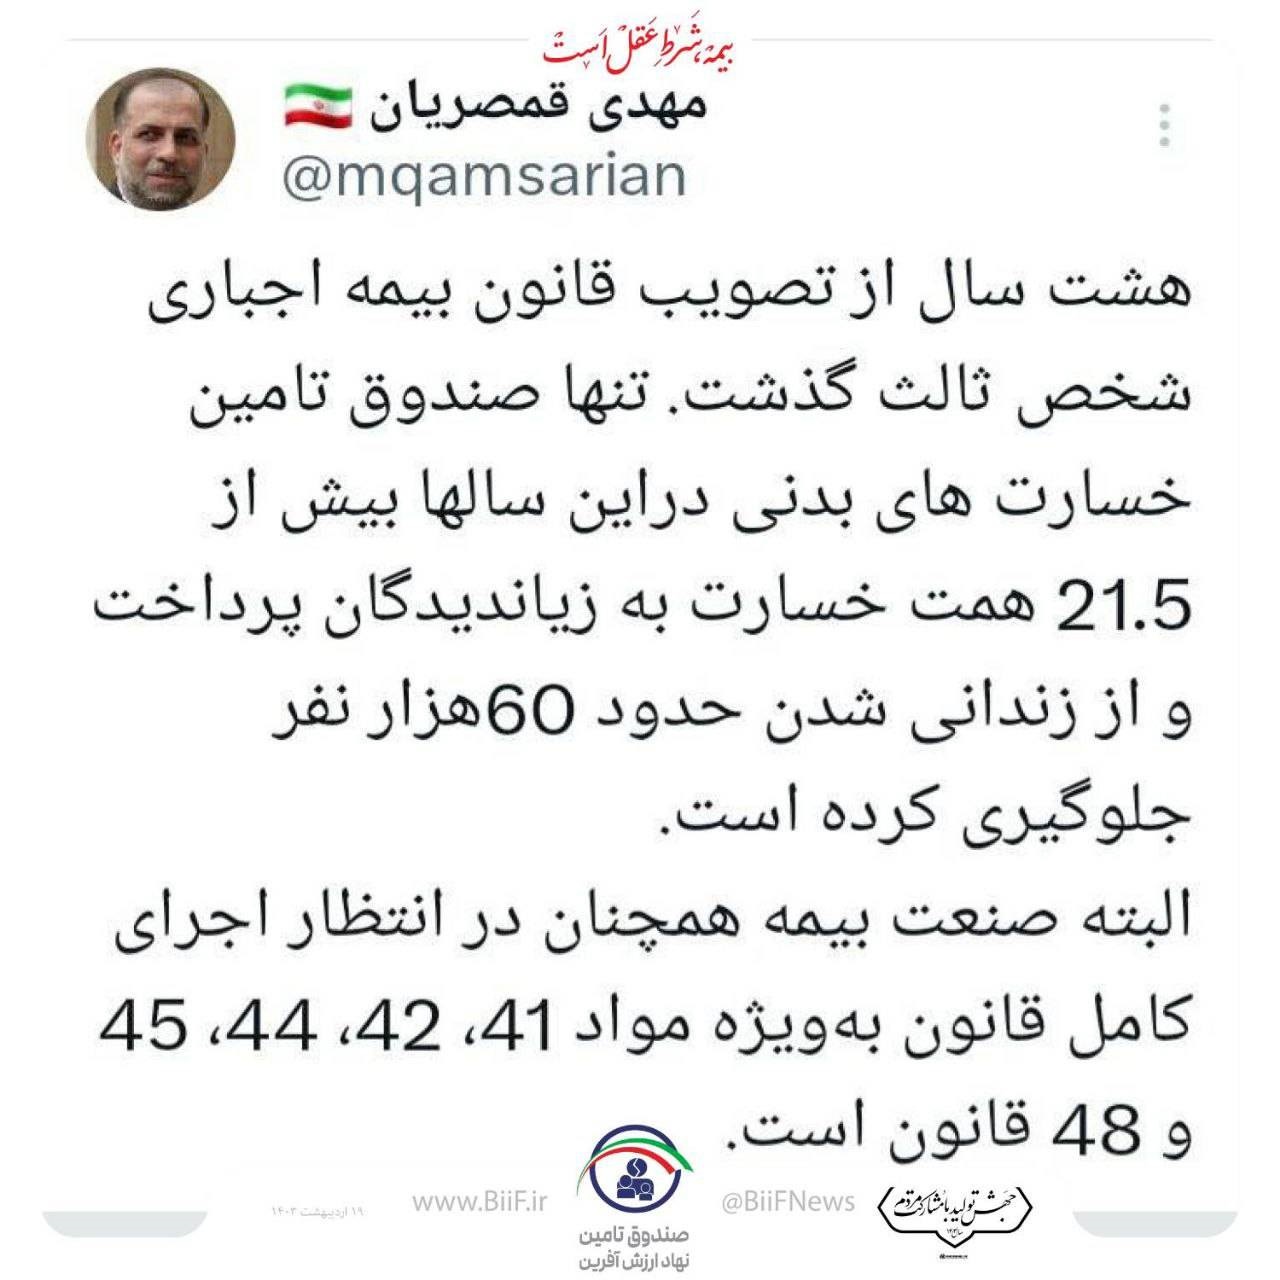 مهدی قمصریان: صندوق تامین در 8 سال ۲۱.۵ همت خسارت پرداخت و از حبس حدود ۶۰هزار نفر جلوگیری كرده است